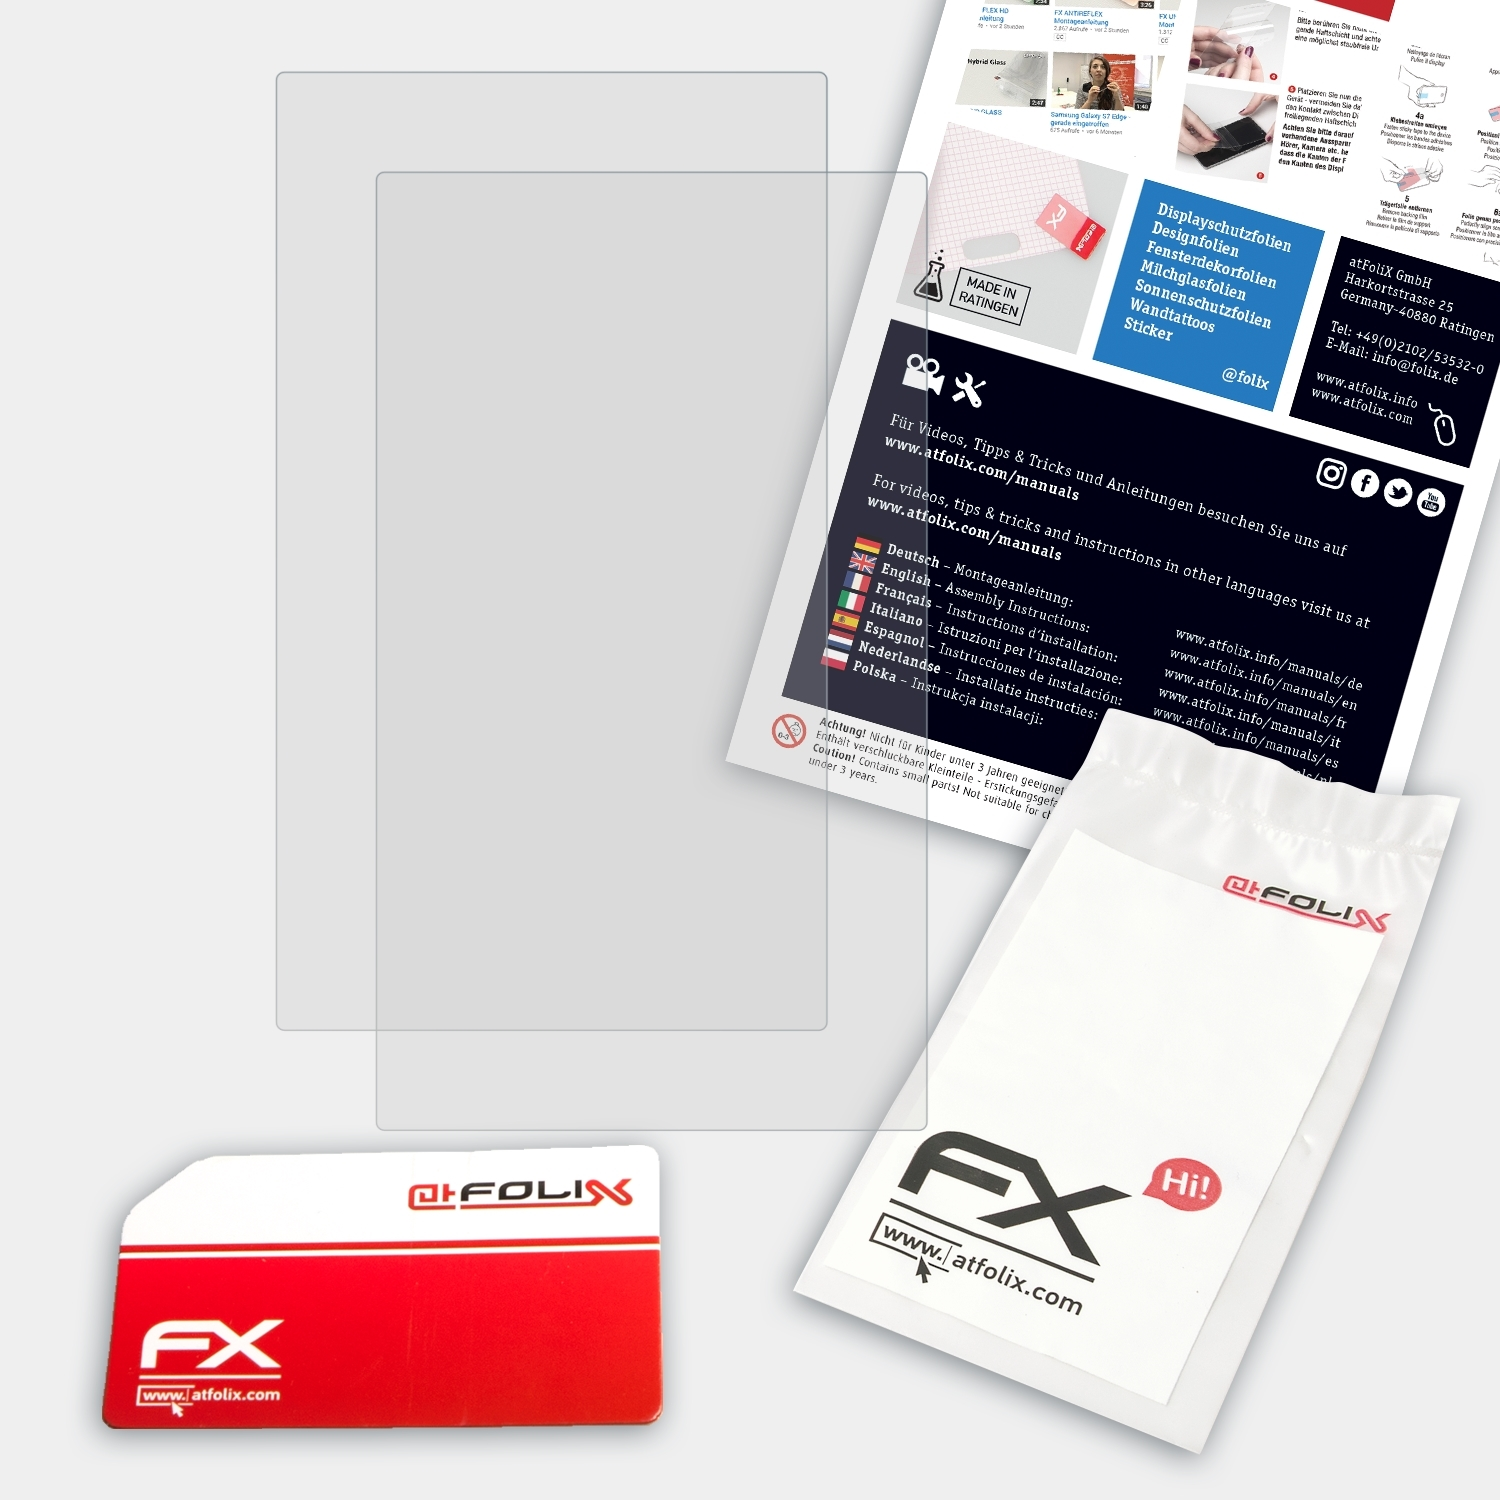 2x II)) (ClassPad ATFOLIX Displayschutz(für Casio FX-Antireflex FX-CP400